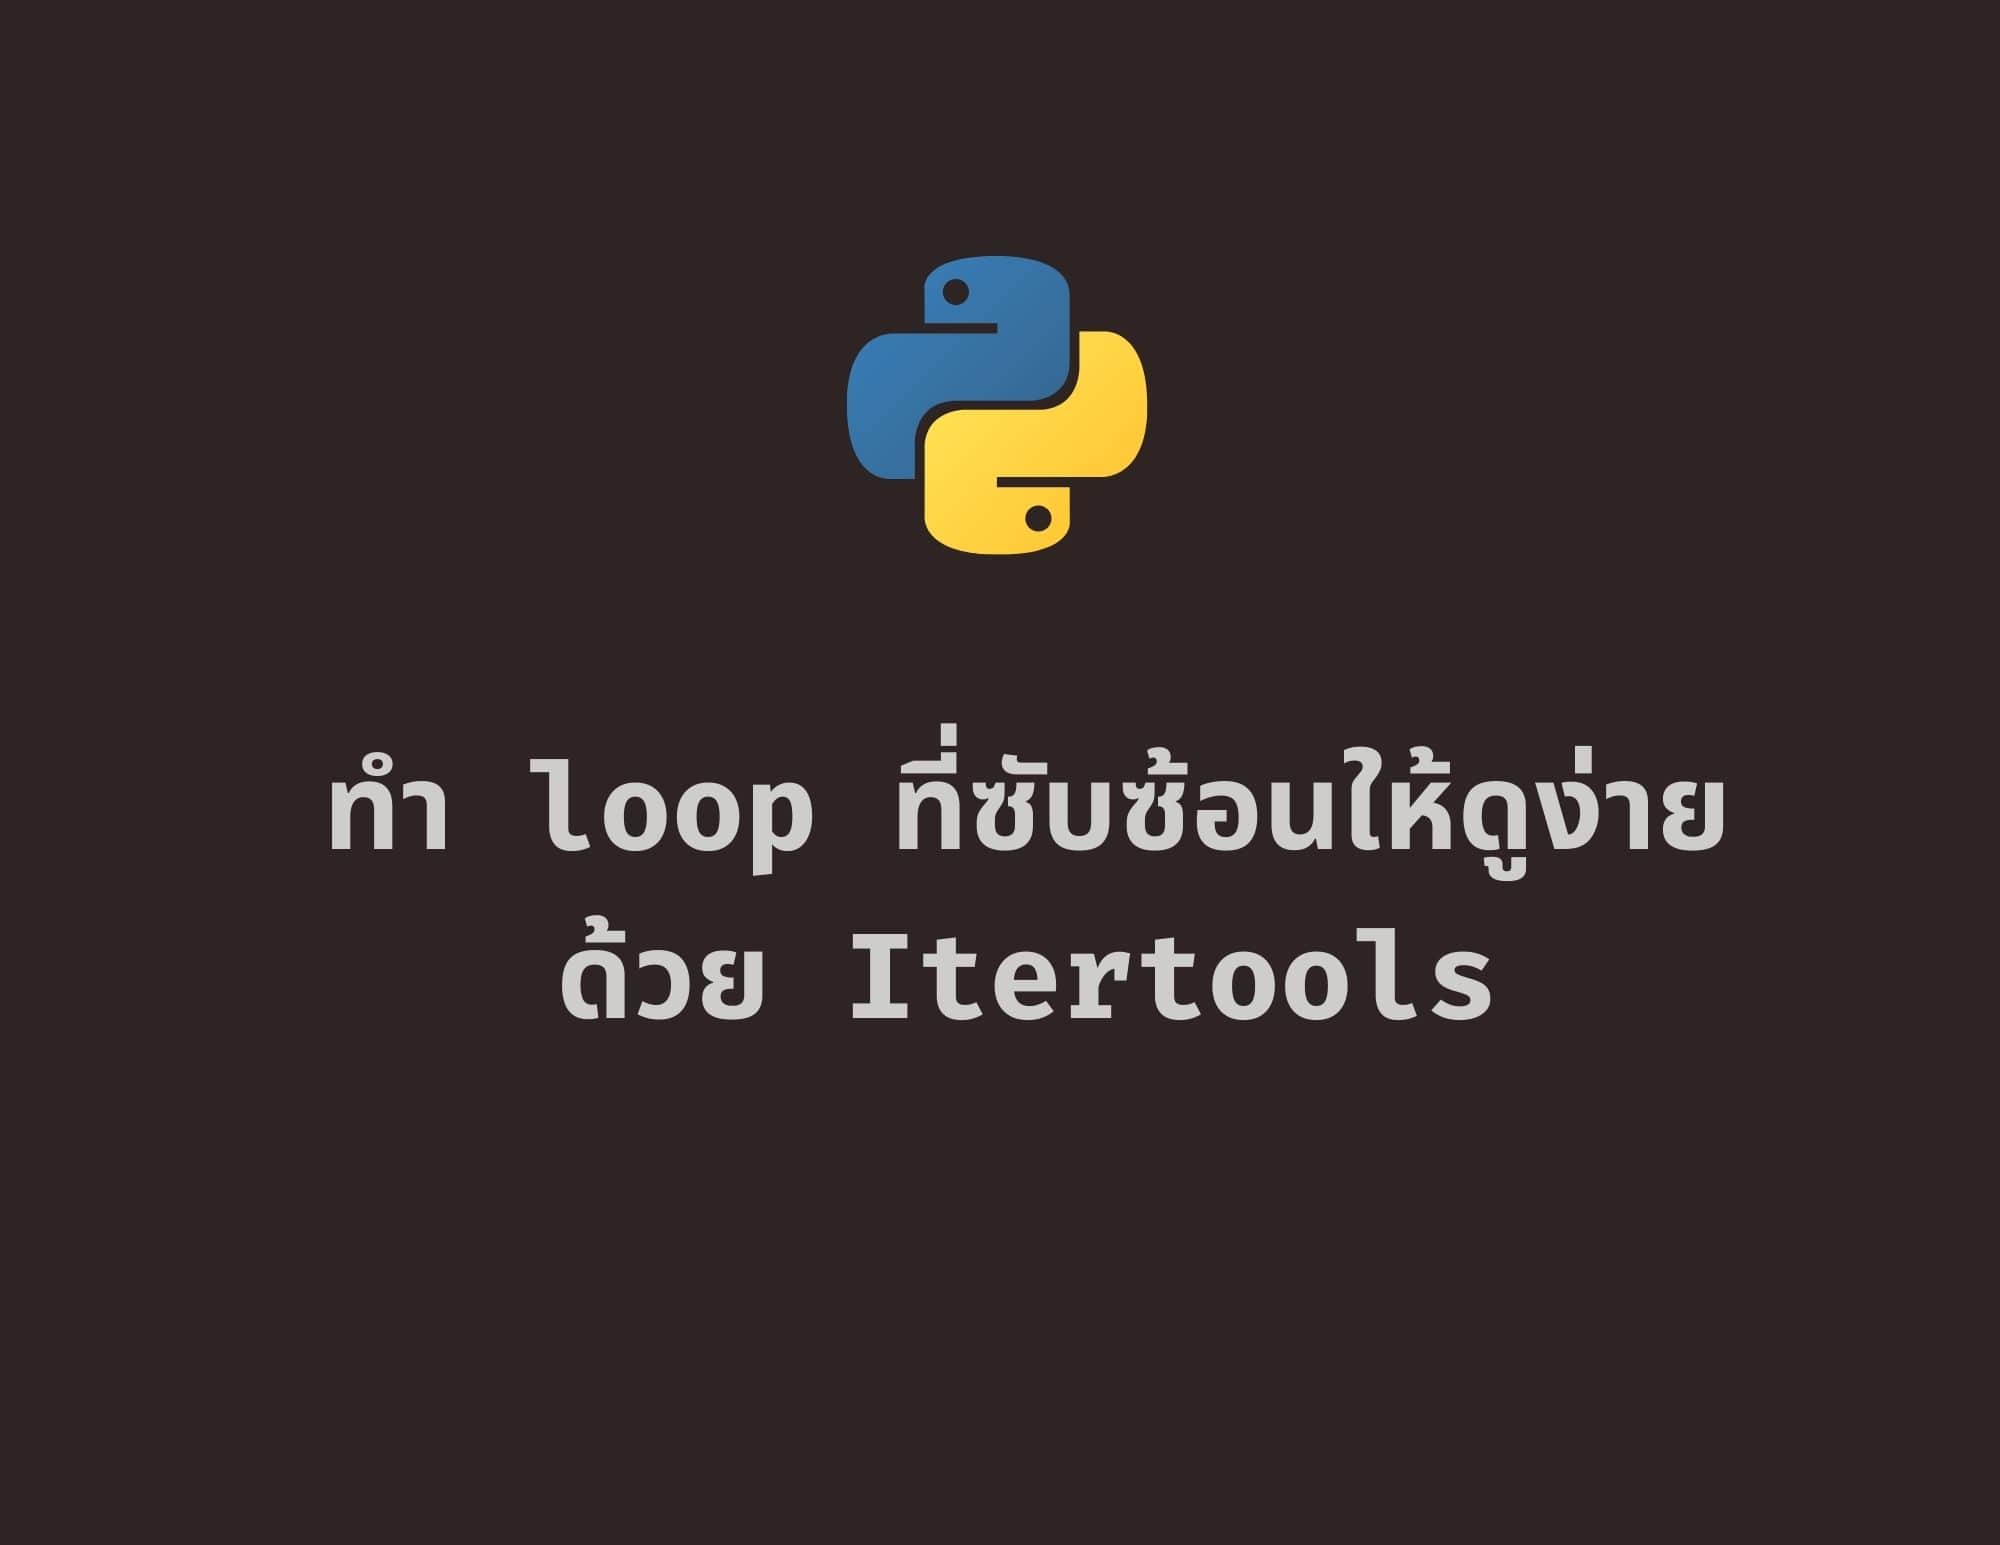 ทำ Python Loop ที่ซับซ้อนให้ดูง่ายด้วย Itertools